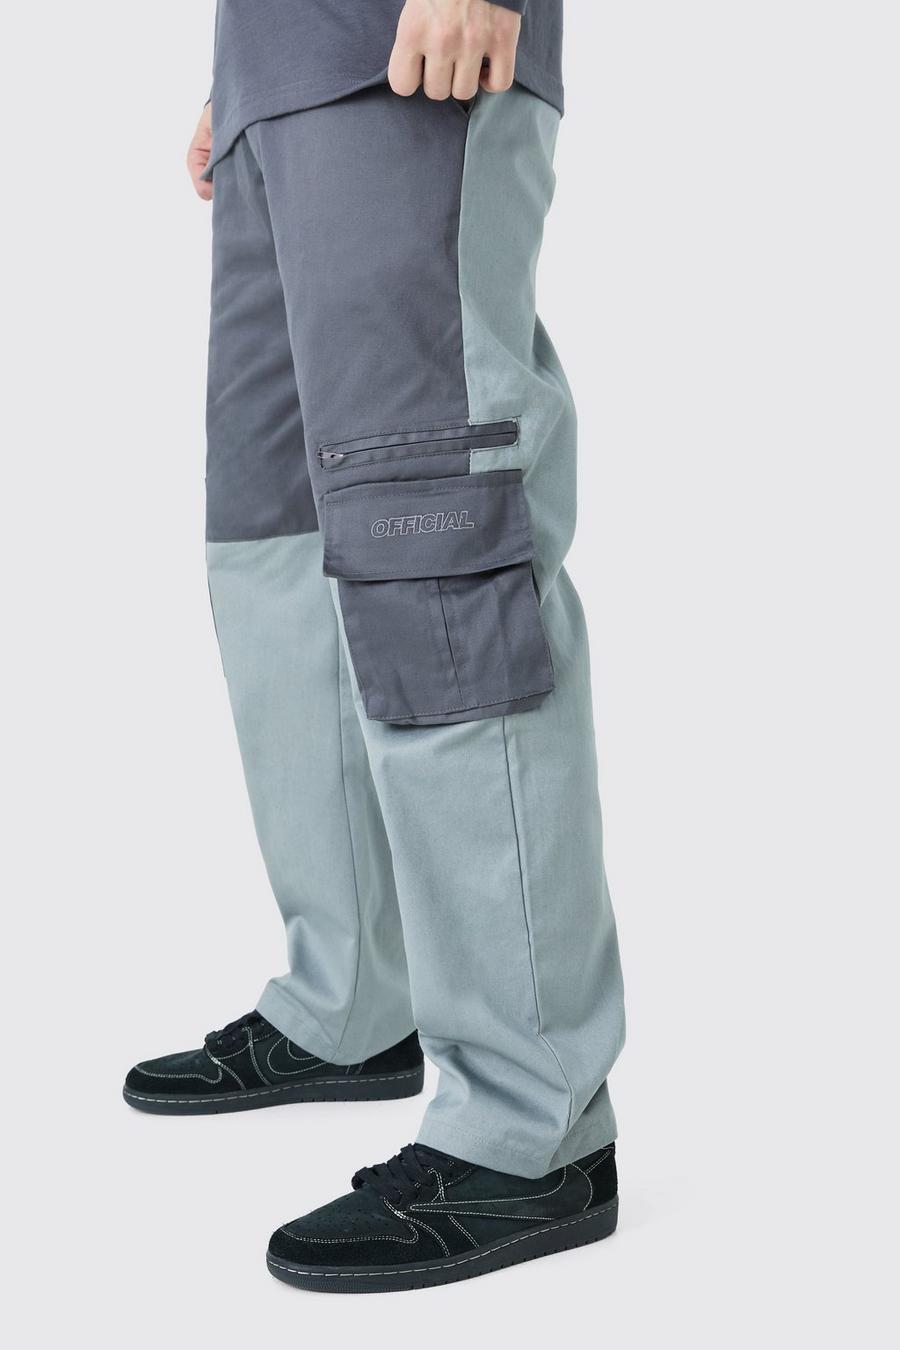 Pantalón Tall holgado cargo con colores en bloque Official, Charcoal grey